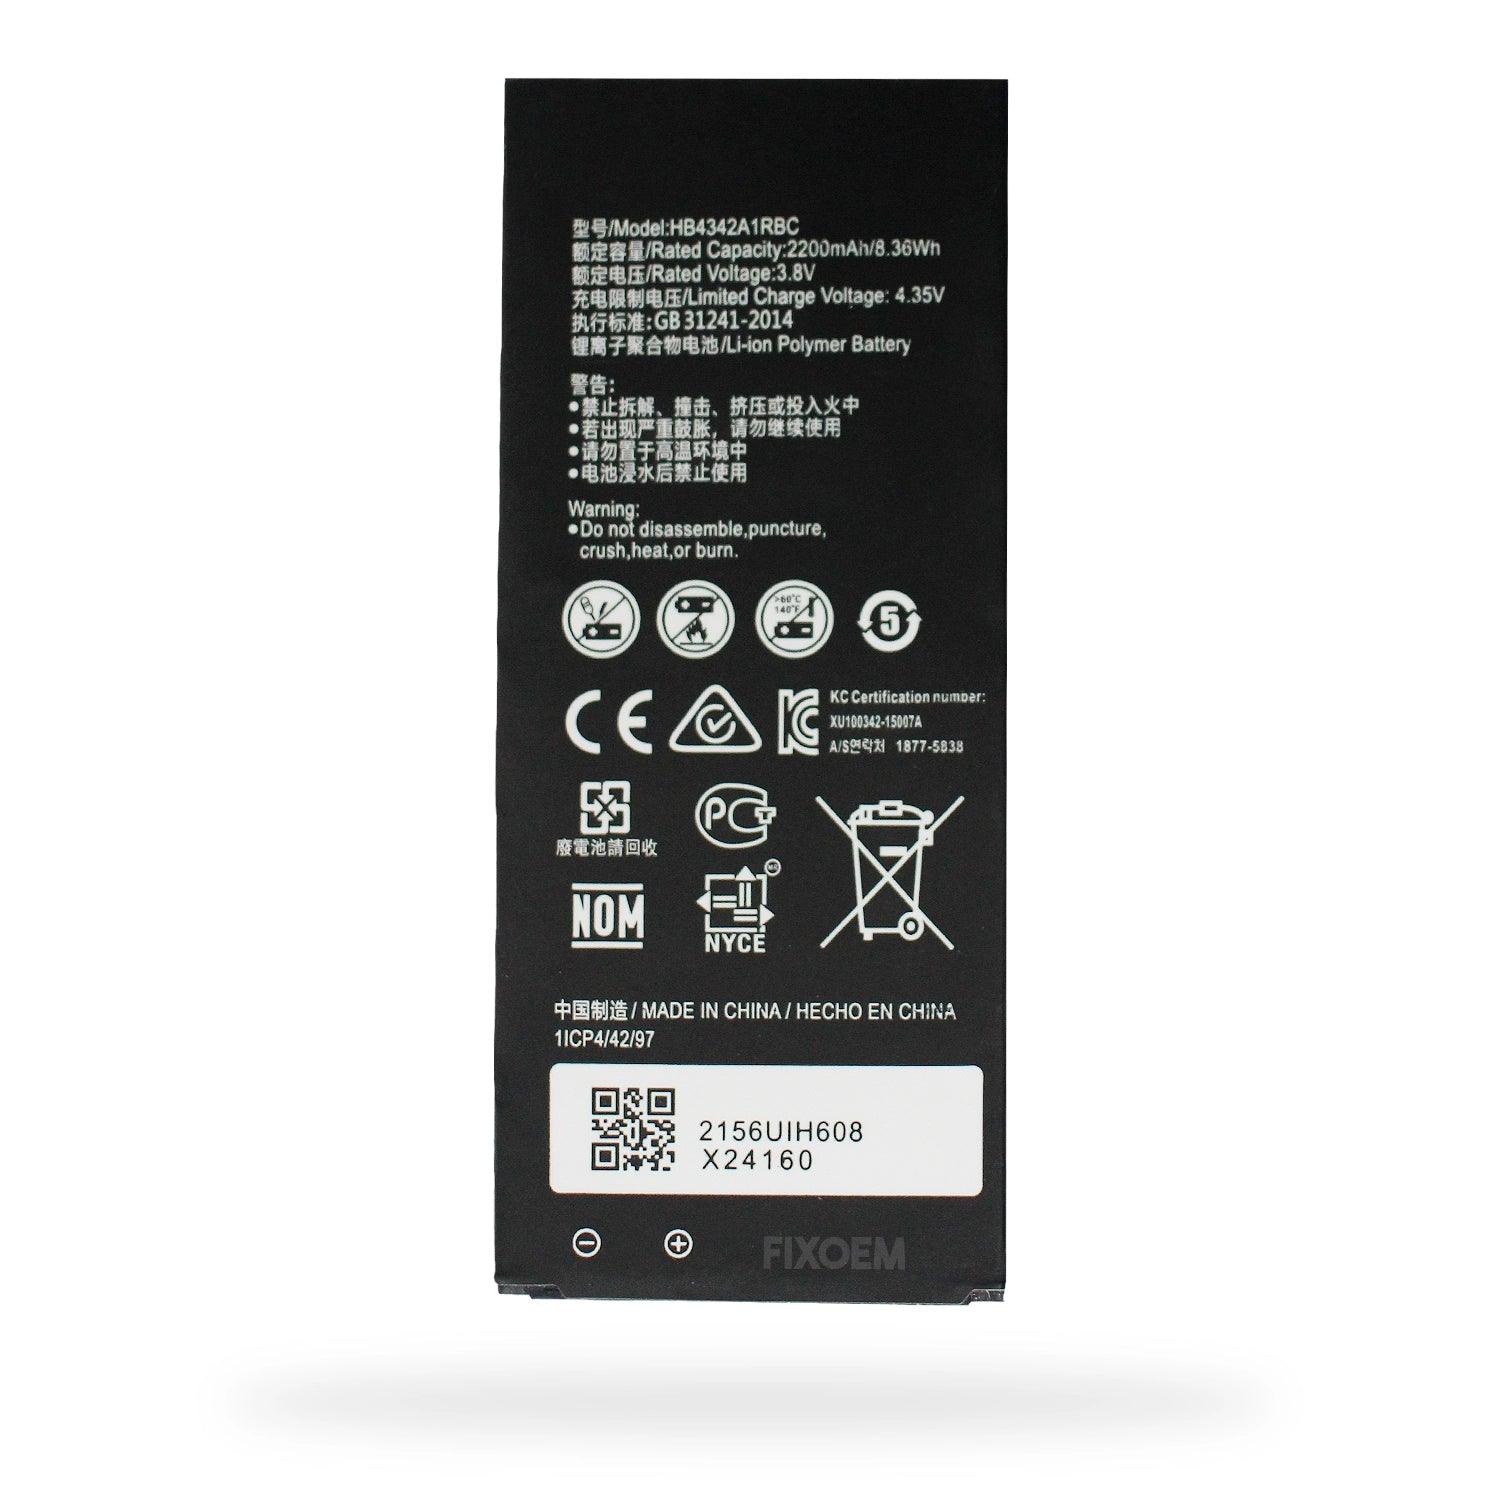 Bateria Huawei Y5Ii / Y6 Cun-L03 Mrd-LX3 Hb4342A1Rbc. a solo $ 100.00 Refaccion y puestos celulares, refurbish y microelectronica.- FixOEM